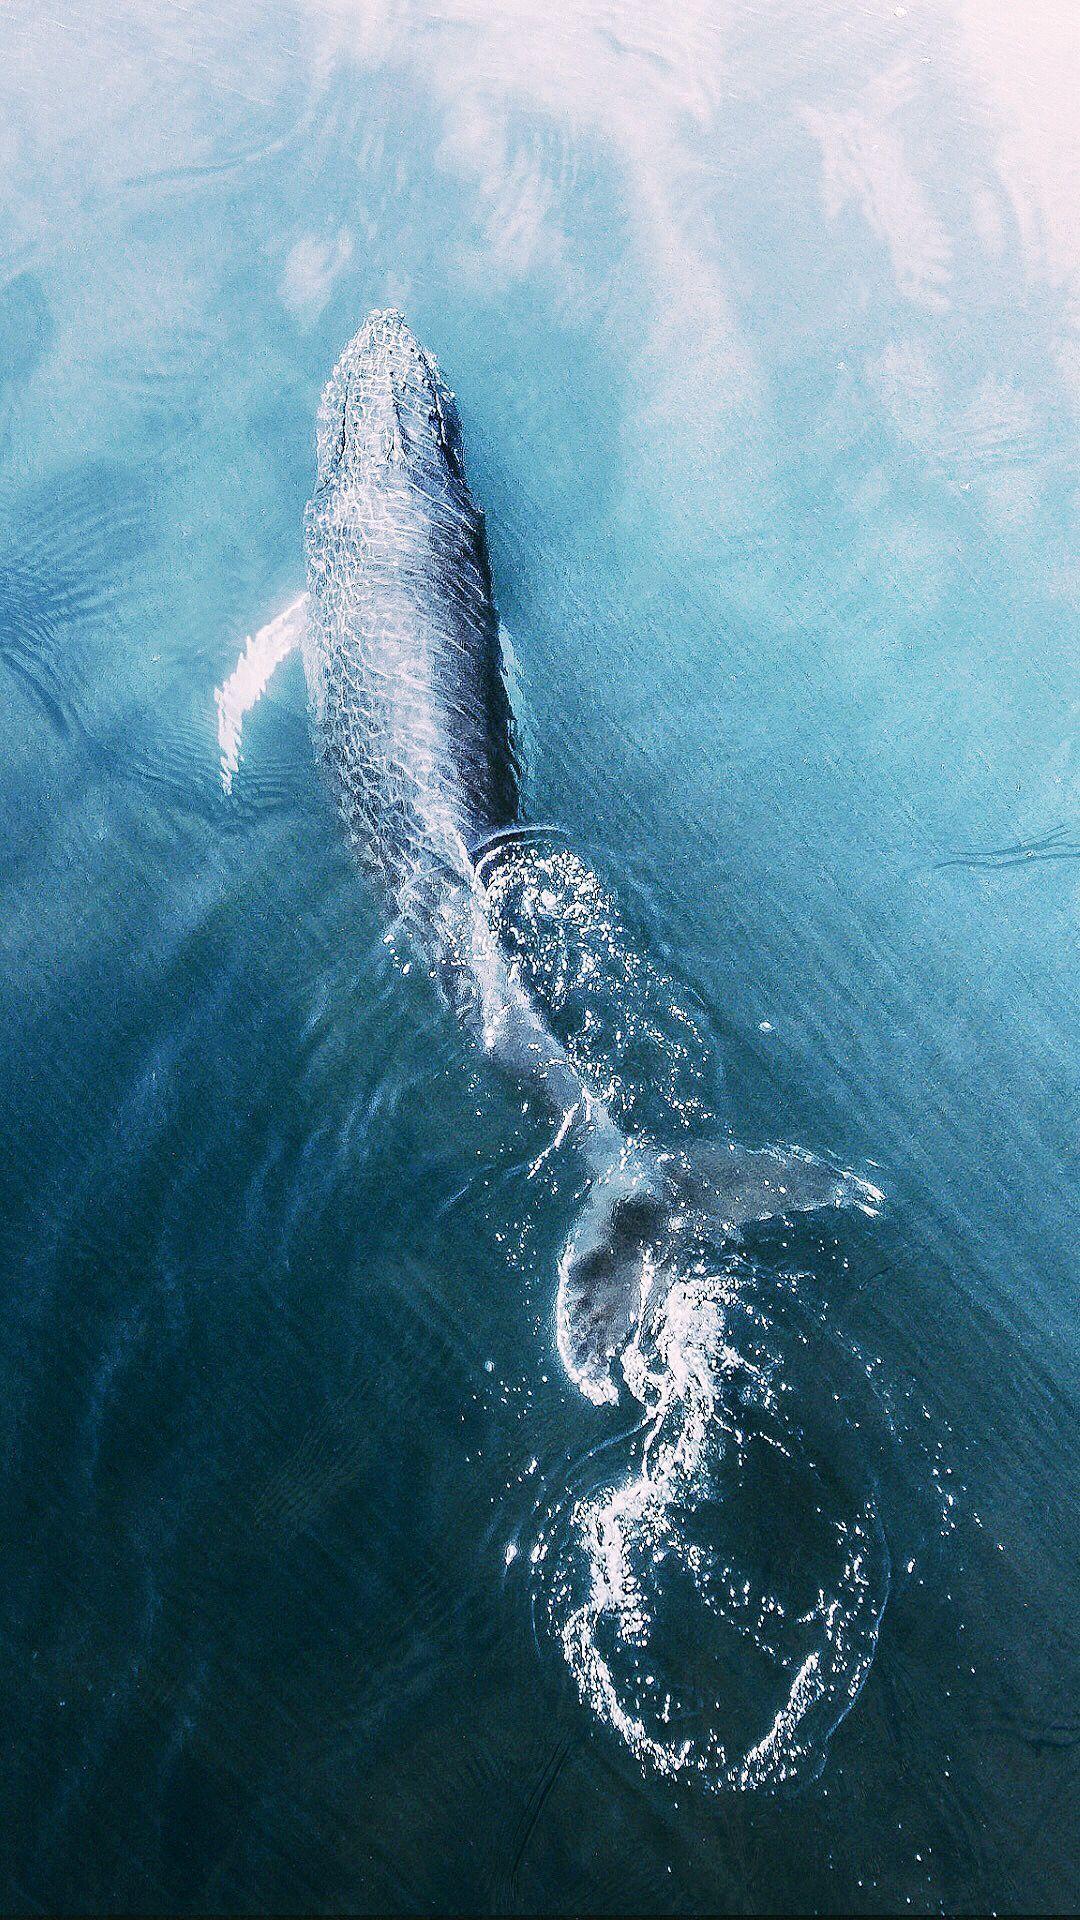 近距离拍摄30米长的蓝鲸 那是什么样的恐惧感觉_哔哩哔哩 (゜-゜)つロ 干杯~-bilibili